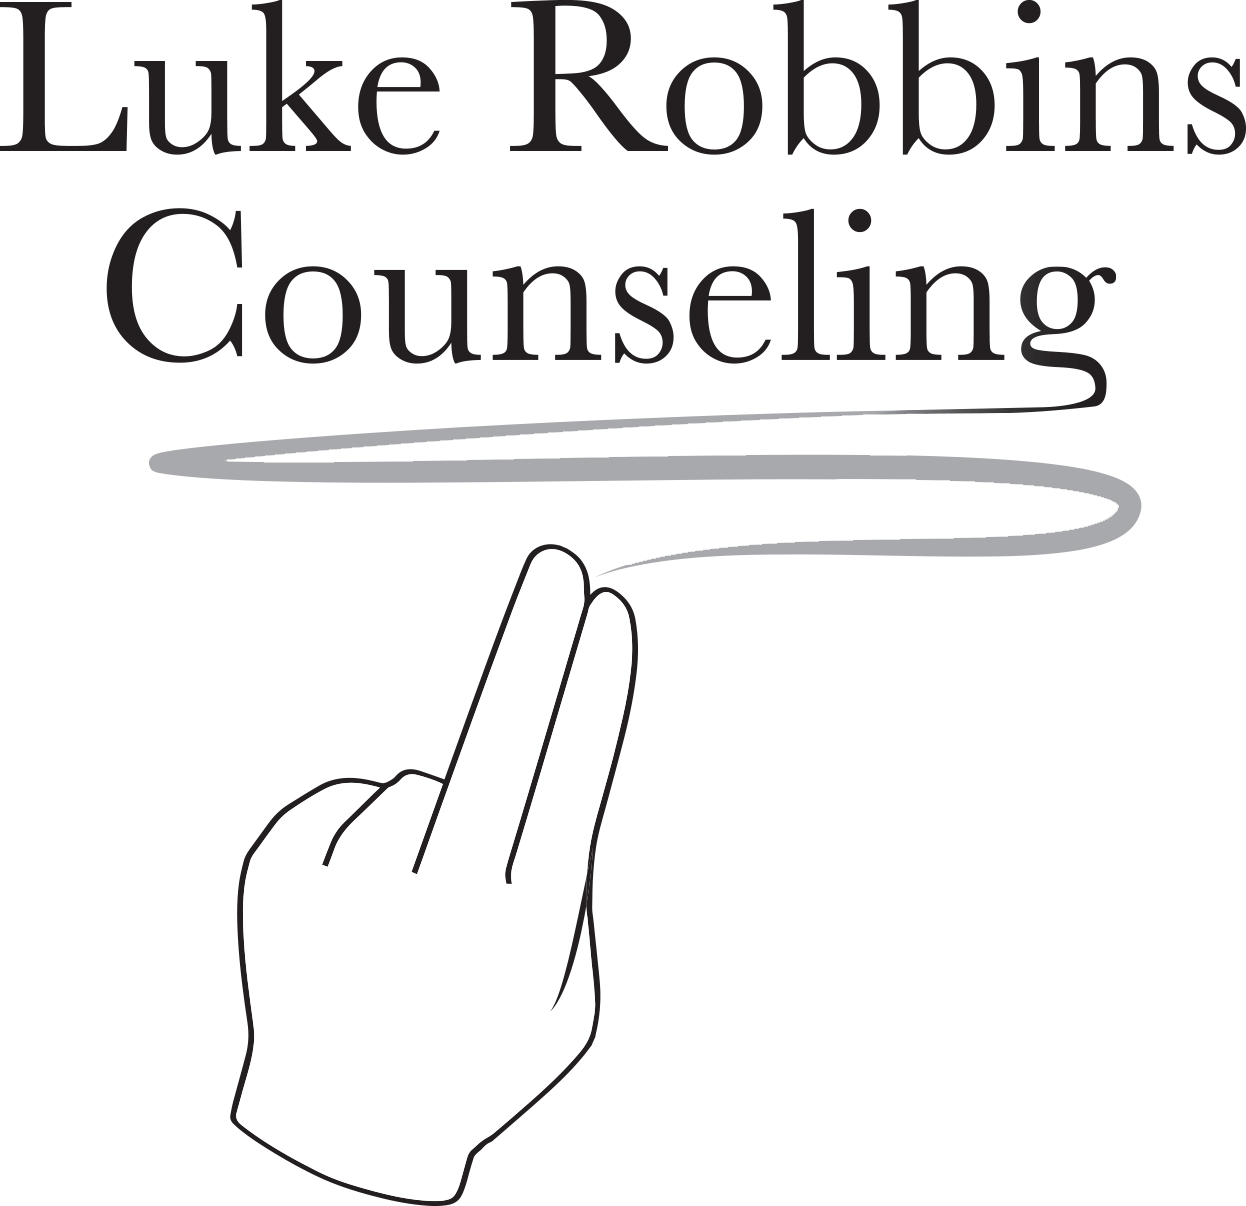 Luke Robbins Counseling